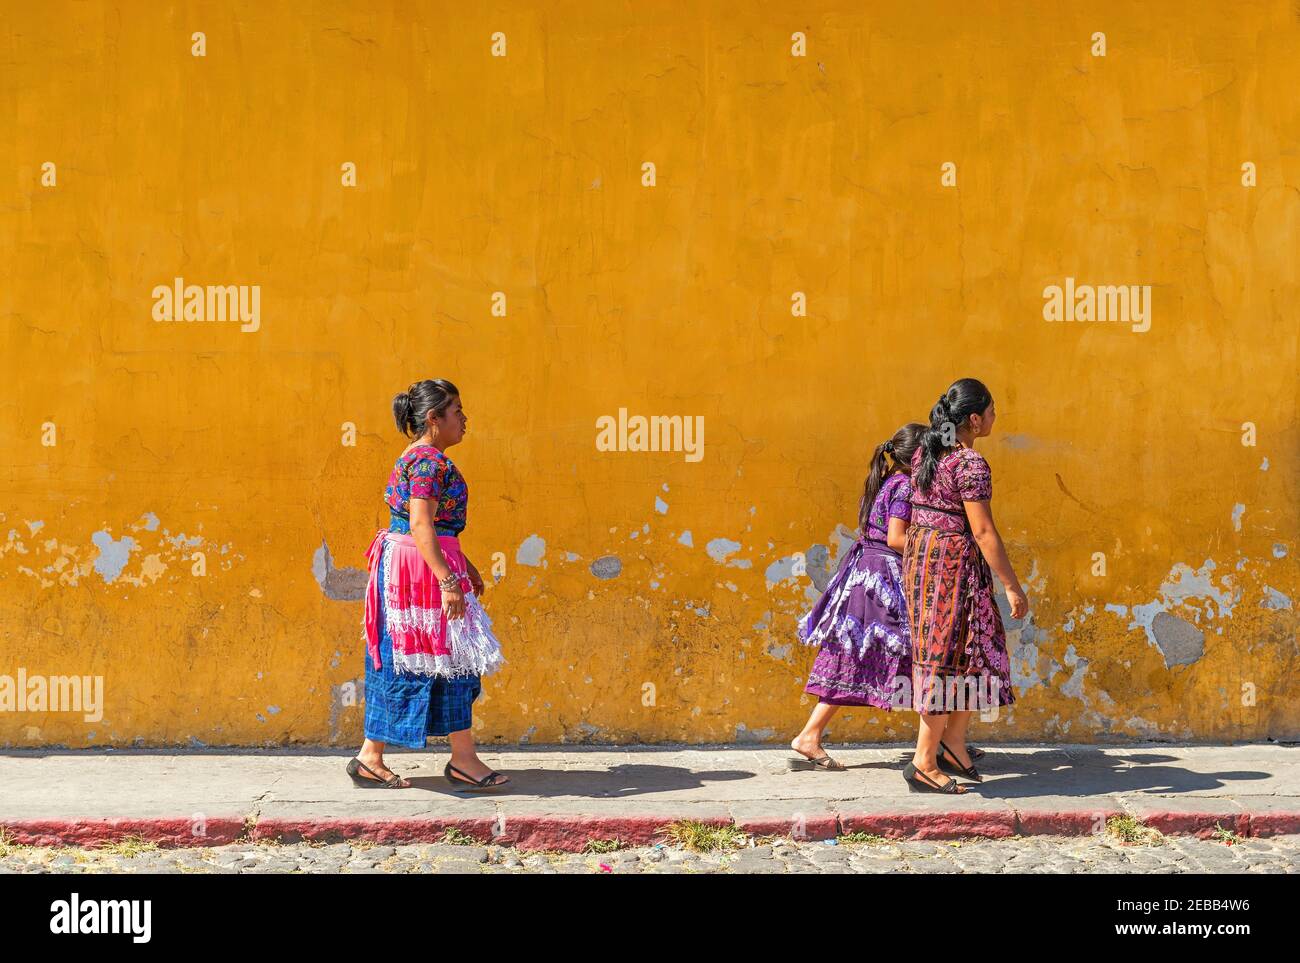 Le donne indigene maya guatemalteche camminano di fronte ad una facciata coloniale della città di Antigua, Guatemala. Foto Stock